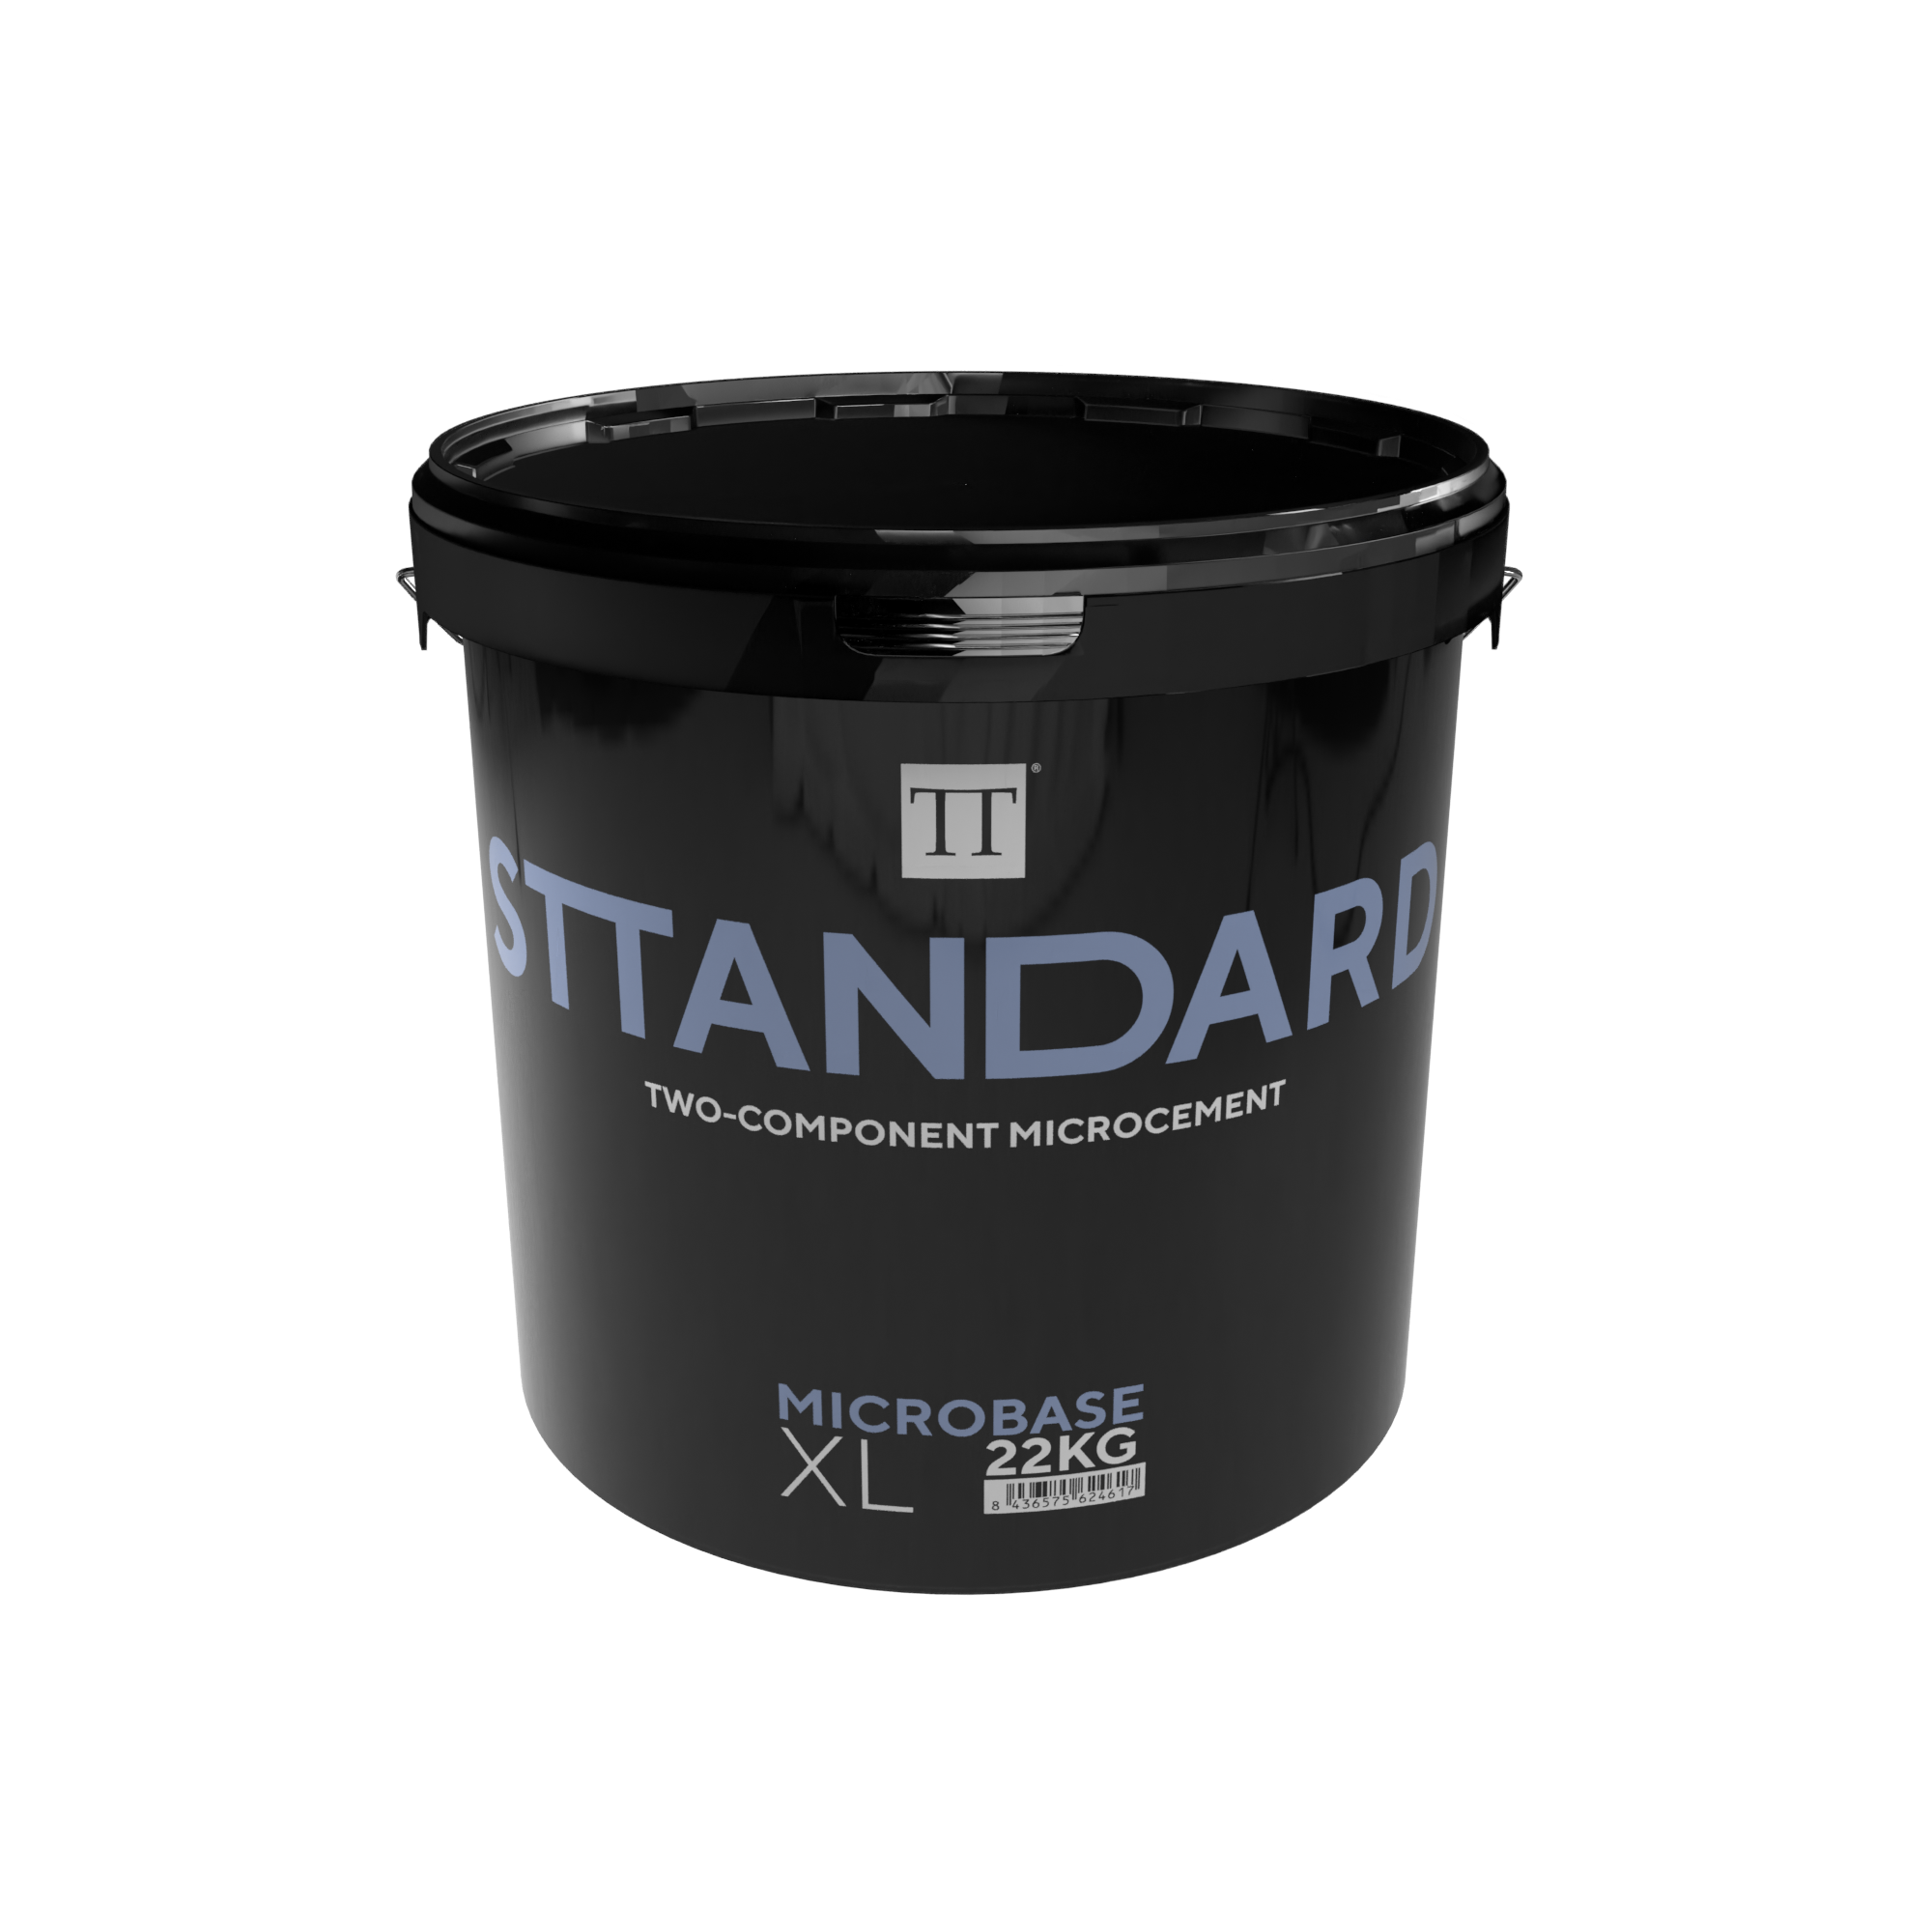 Sttandard Microbase XL